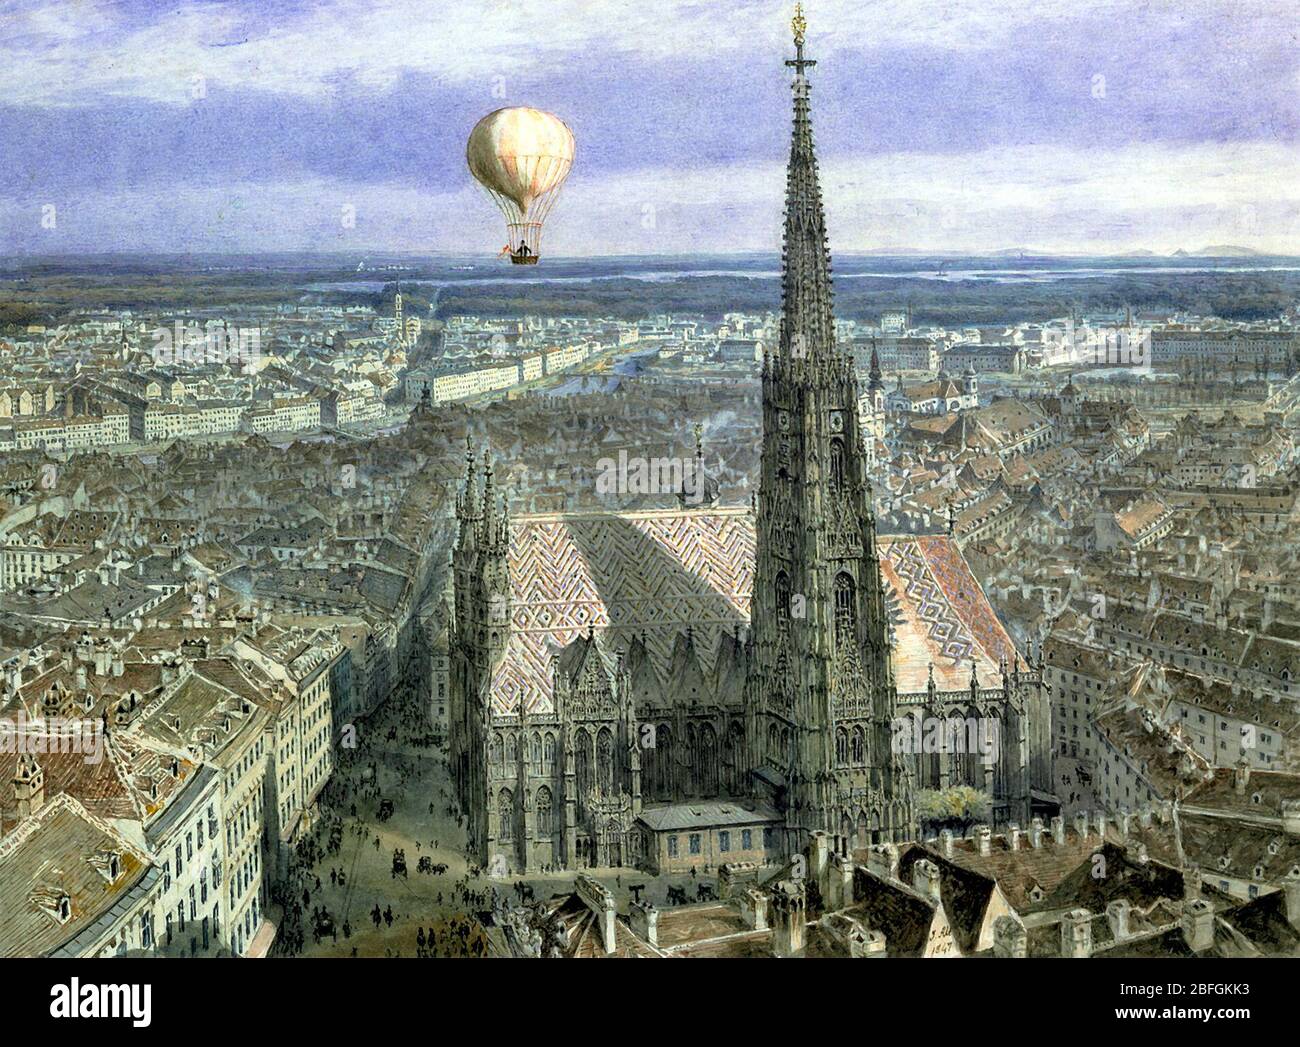 Vienne vue du ballon du sud-ouest - Jakob Alt, 1847 Banque D'Images